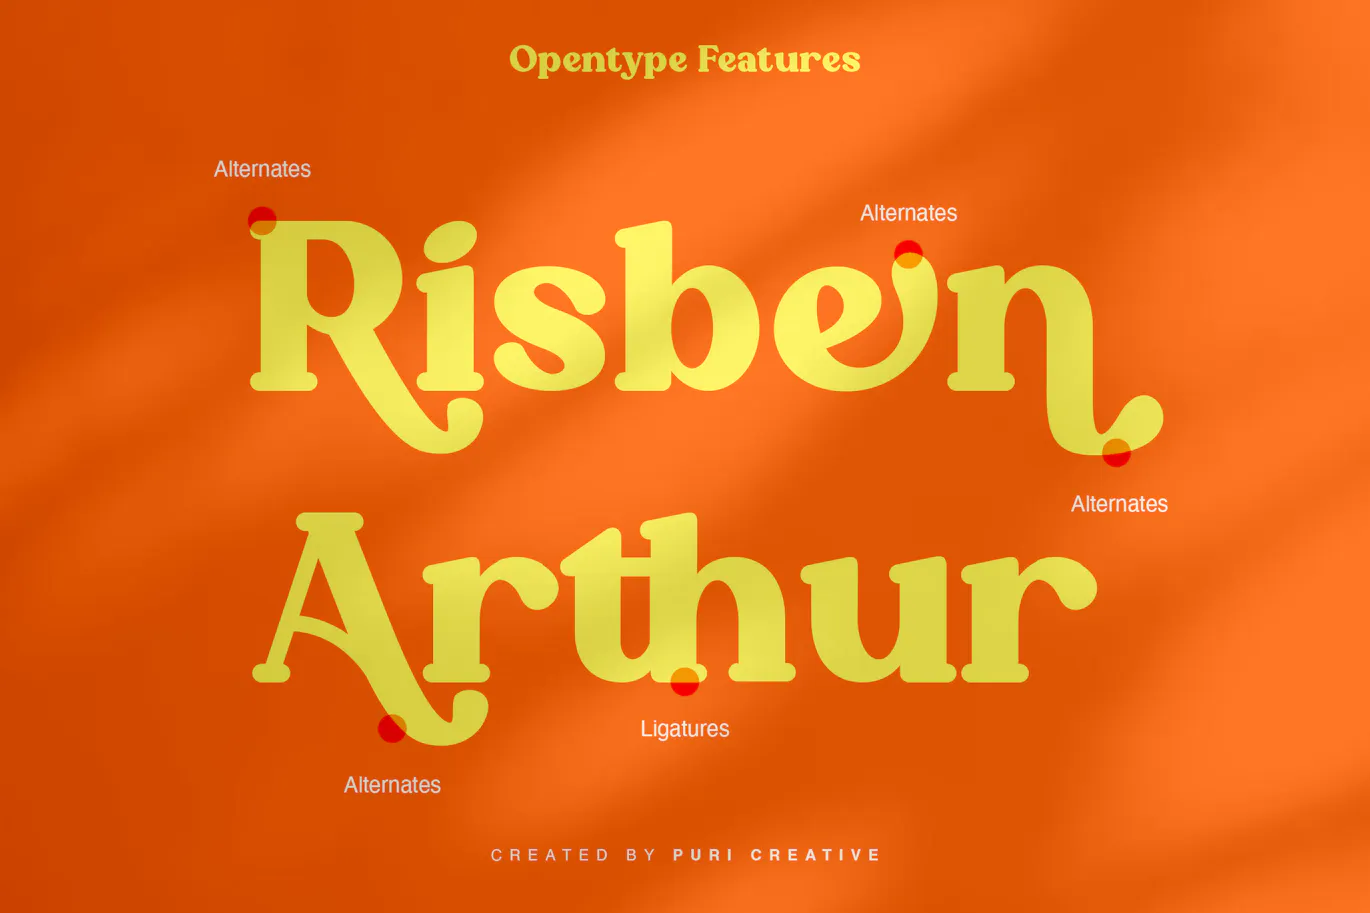 复古风格的英文粗体衬线字体 - Roffene - Retro Serif Style Font 设计字体 第9张